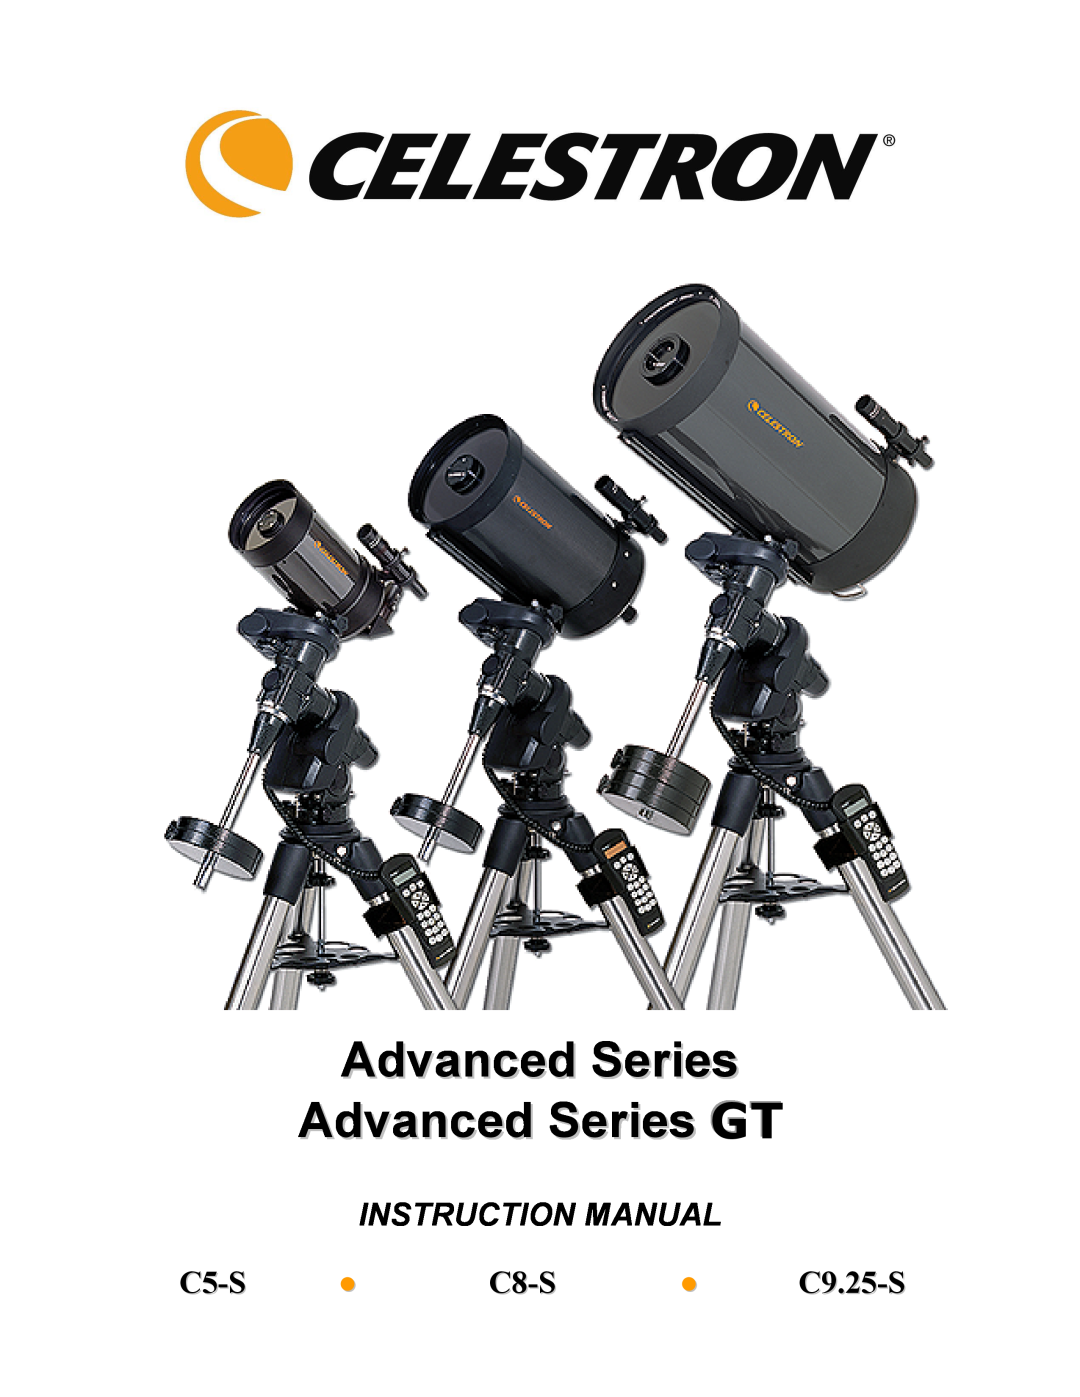 Celestron instruction manual C5-S C8-S C9.25-S, Advanced Series Advanced Series GT, Instruction Manual 